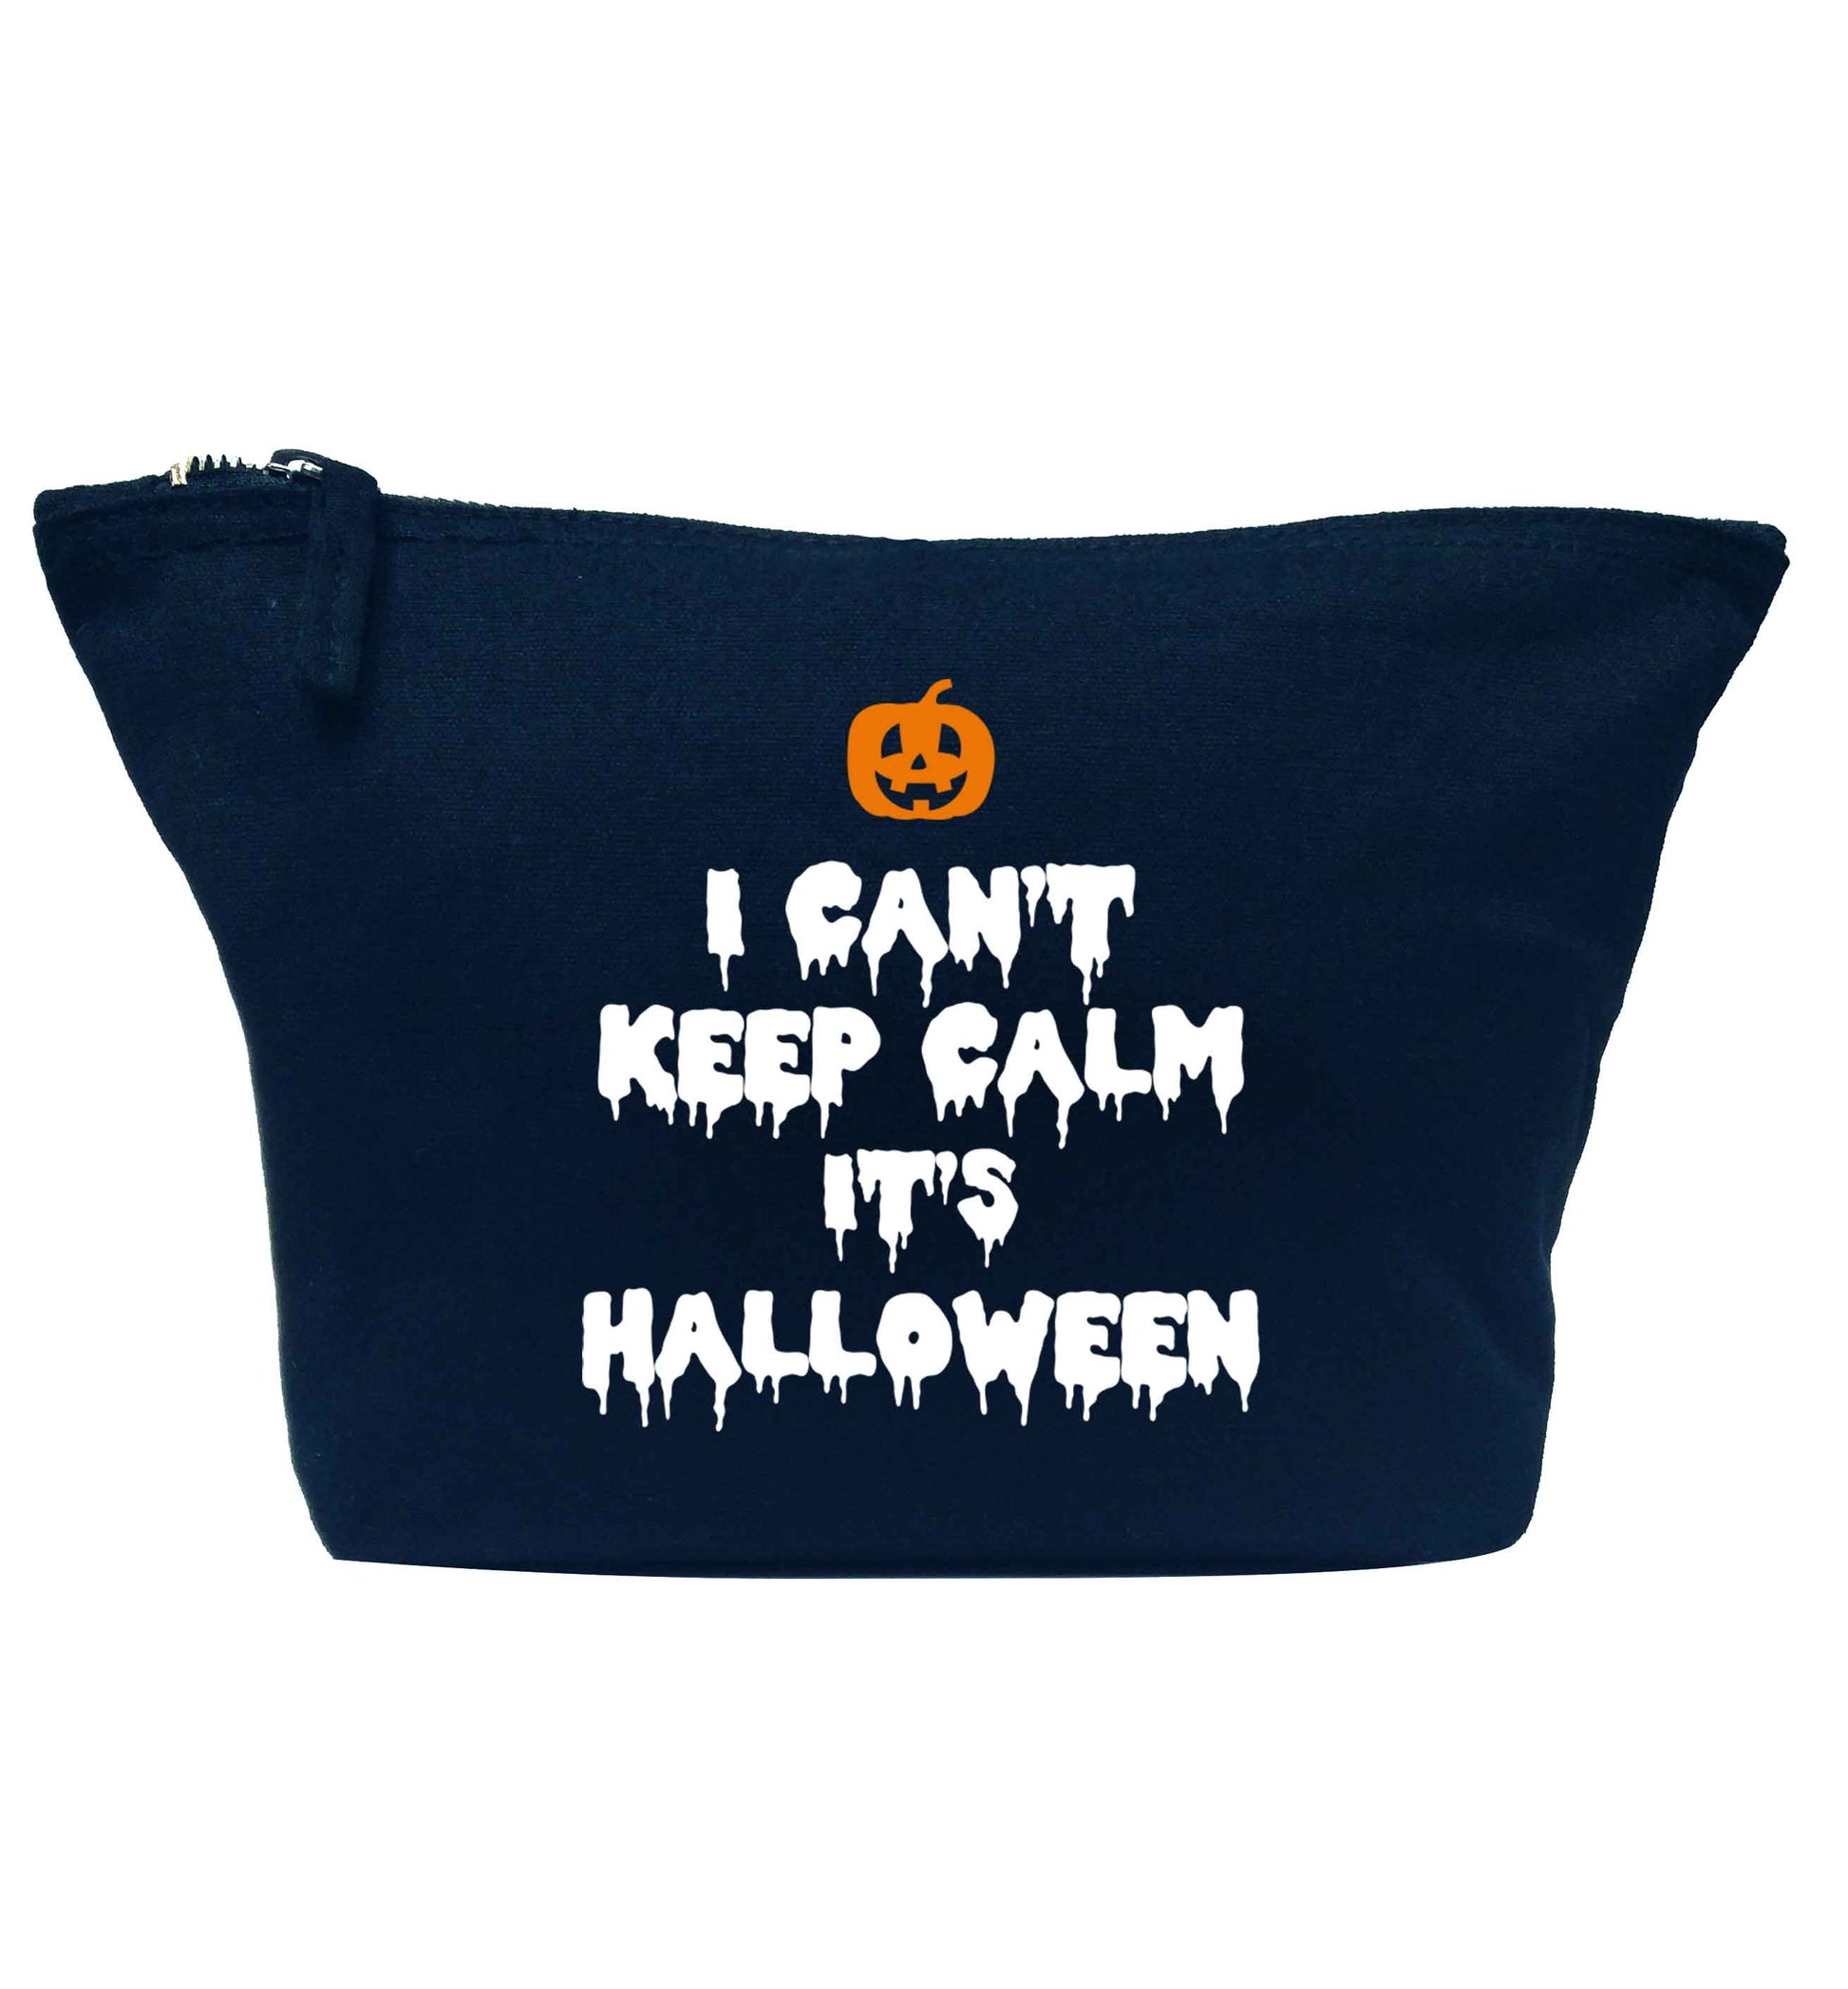 I can't keep calm it's halloween navy makeup bag